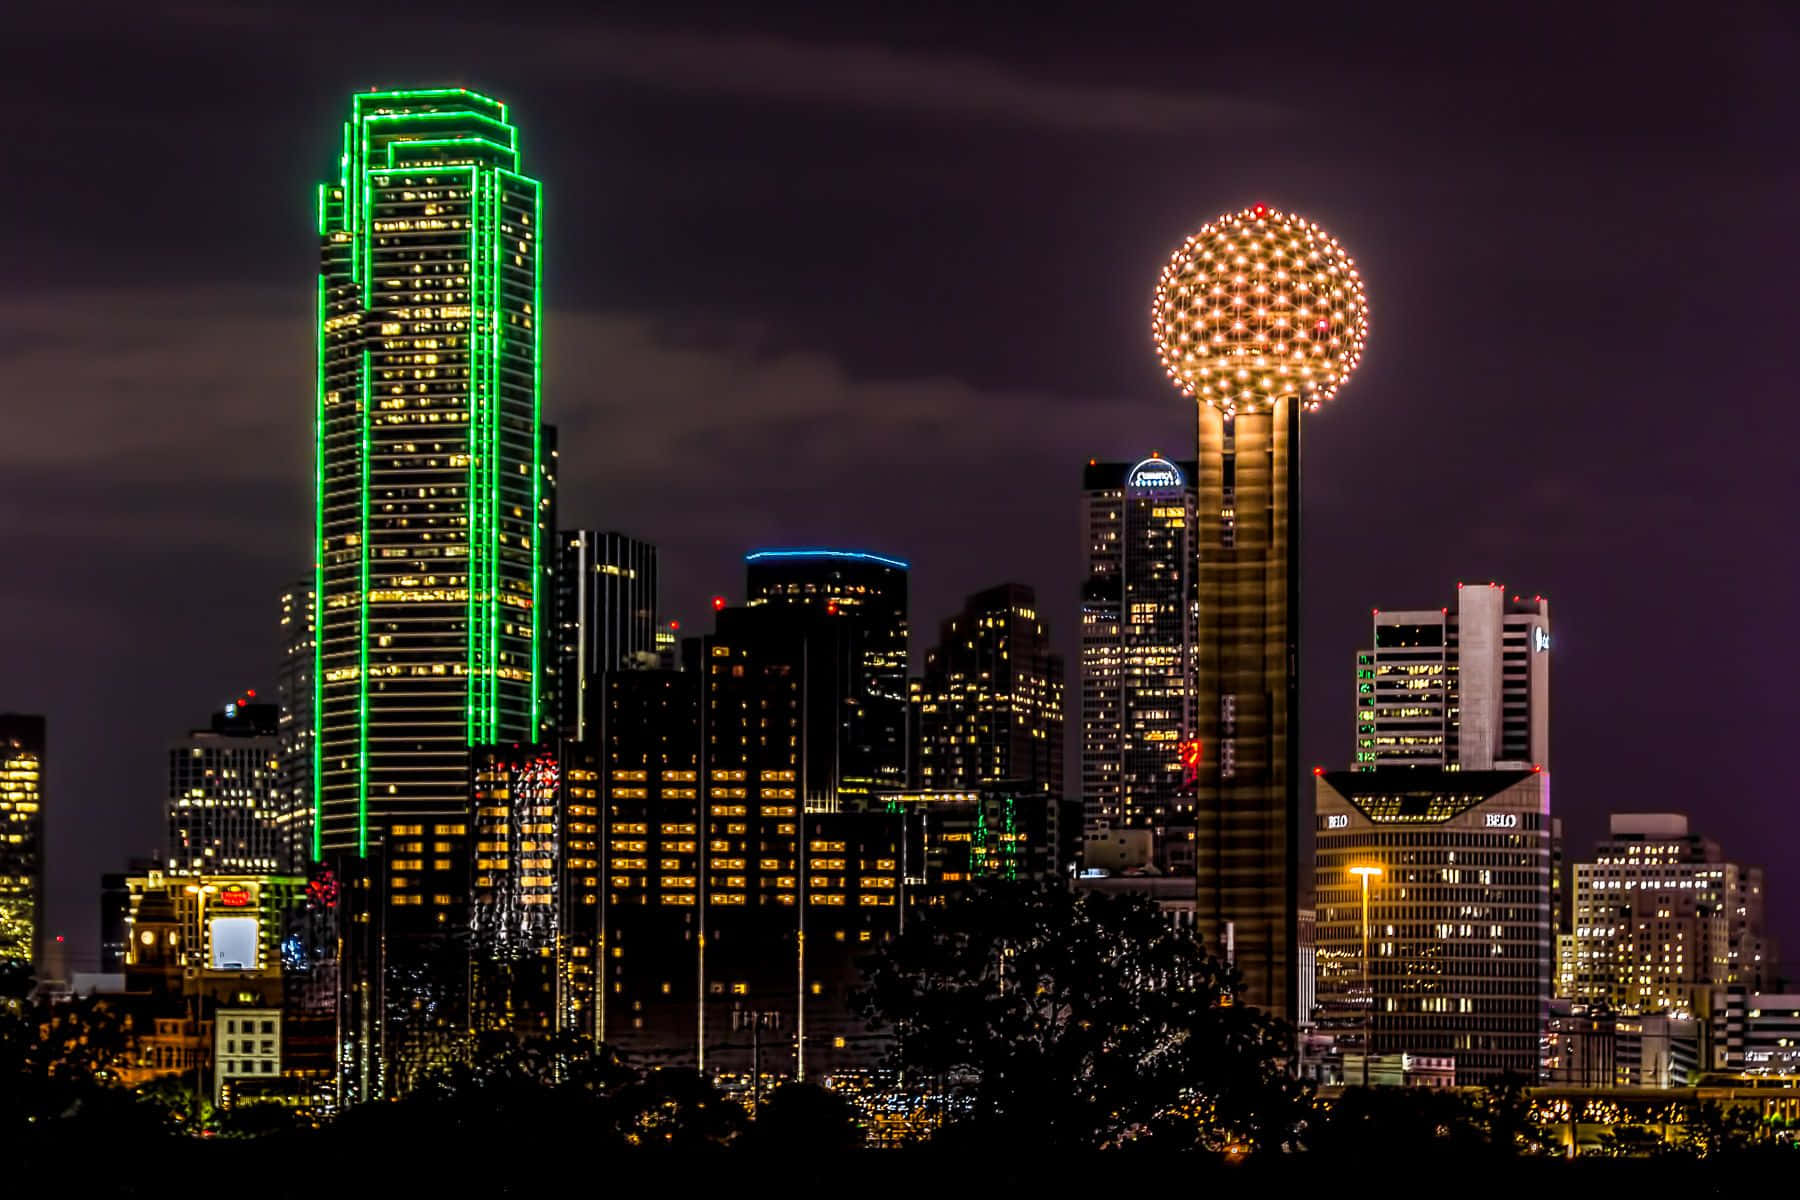 Hintergrundbildreunion Tower In Dallas County